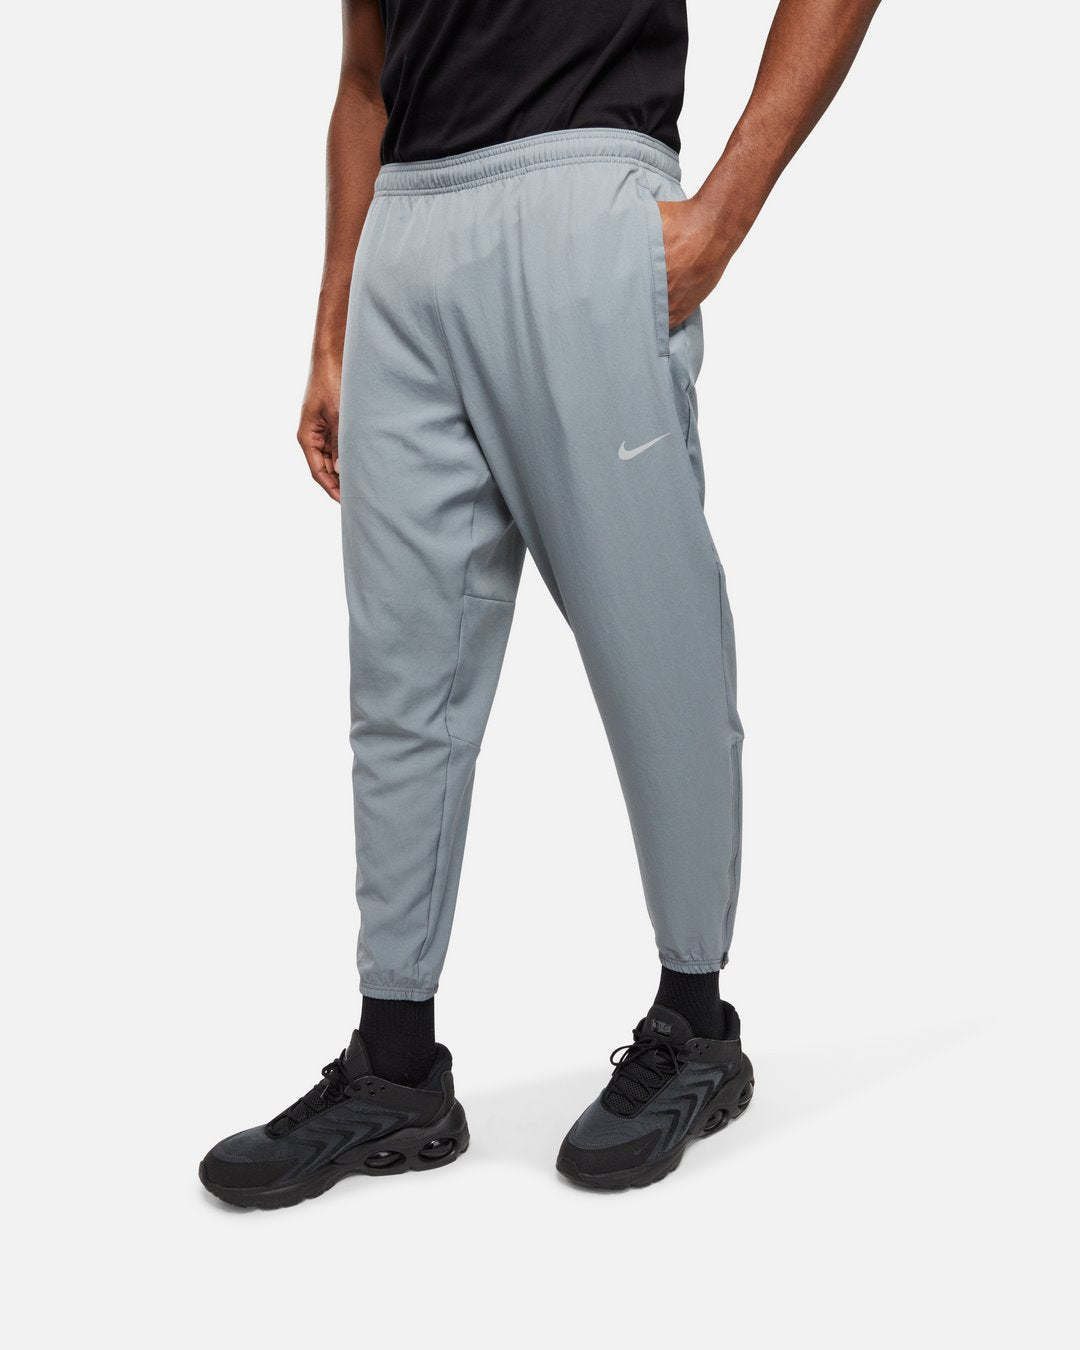 Nike Challenger Pants - Gray